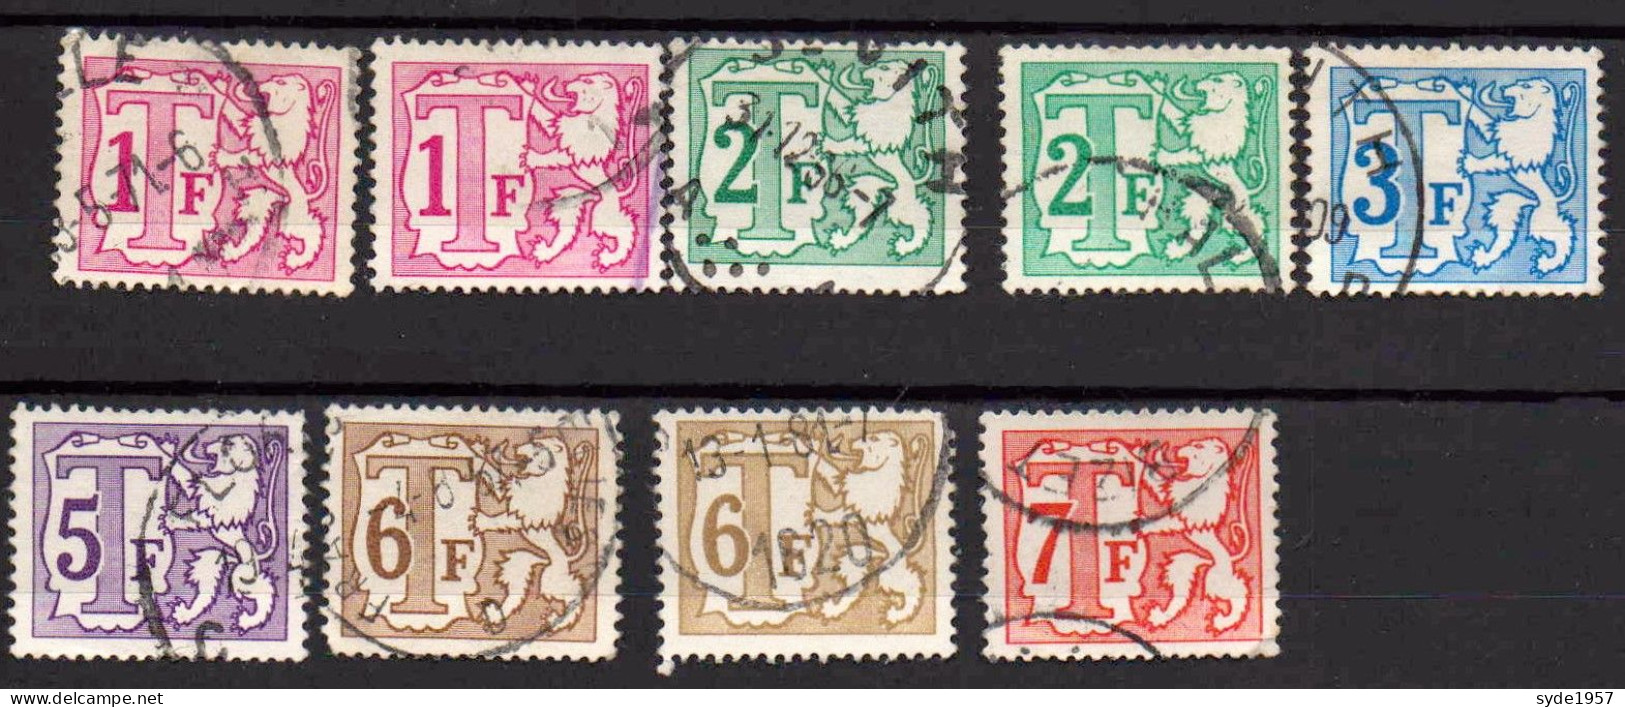 Belgique - Timbres Taxe 1966 :  9 Timbres Oblitérés, Liste COB Ci-dessous - Stamps